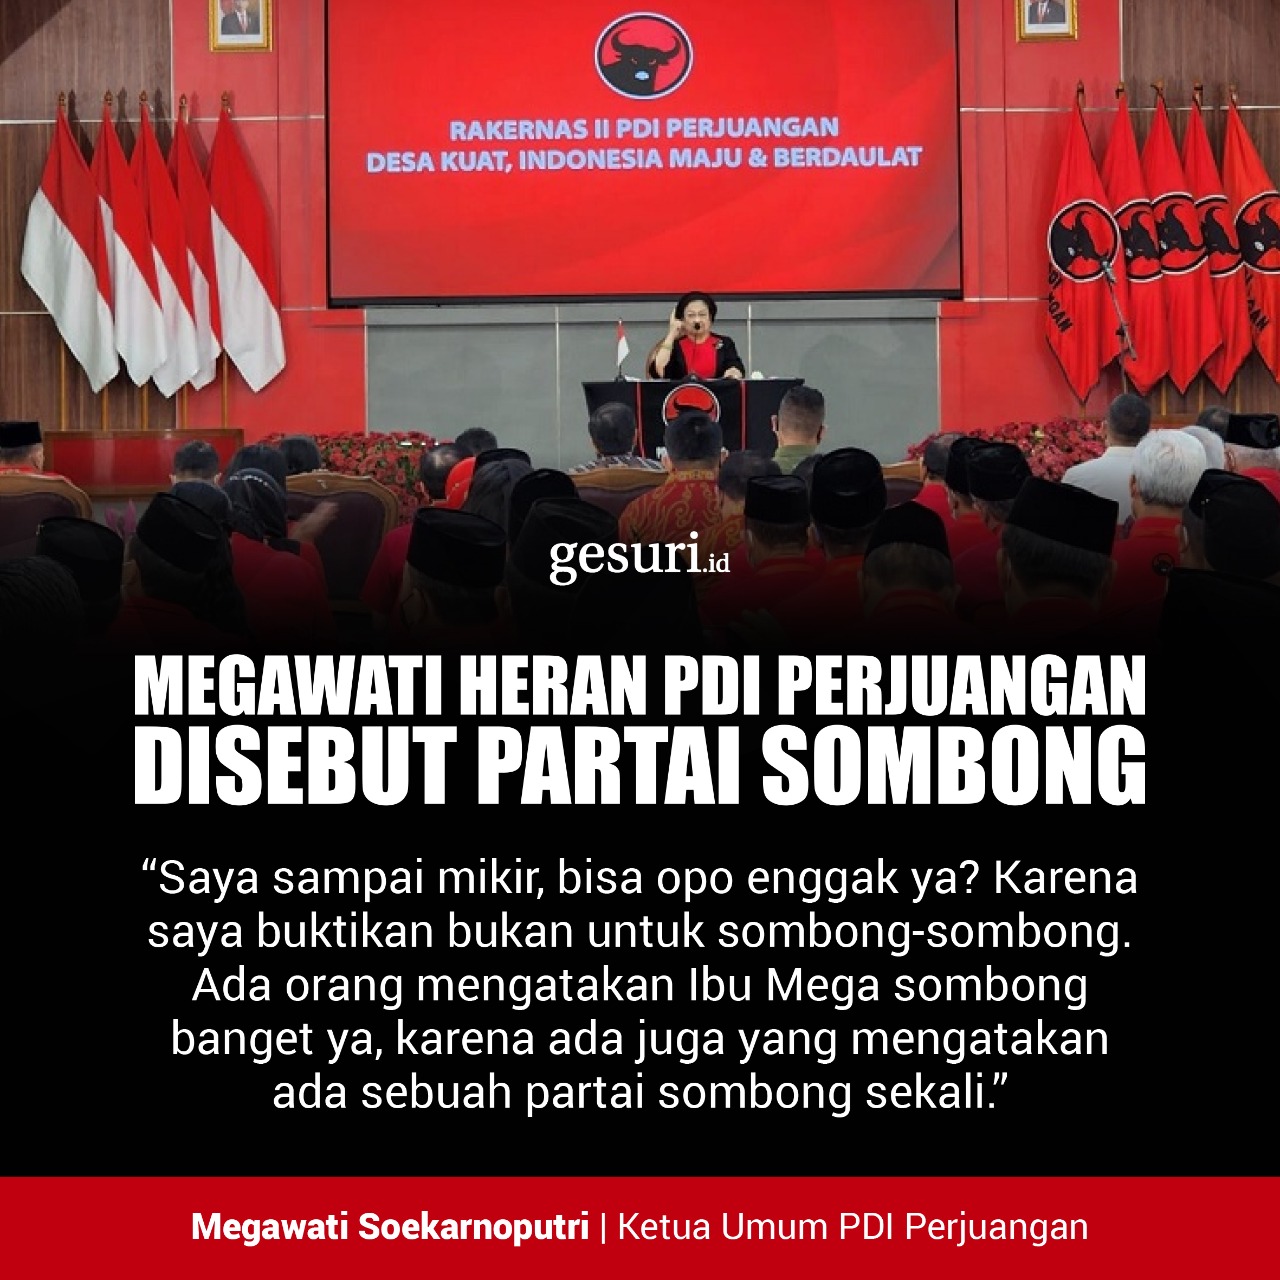 Megawati Heran PDI Perjuangan Disebut Partai Sombong (1/2)